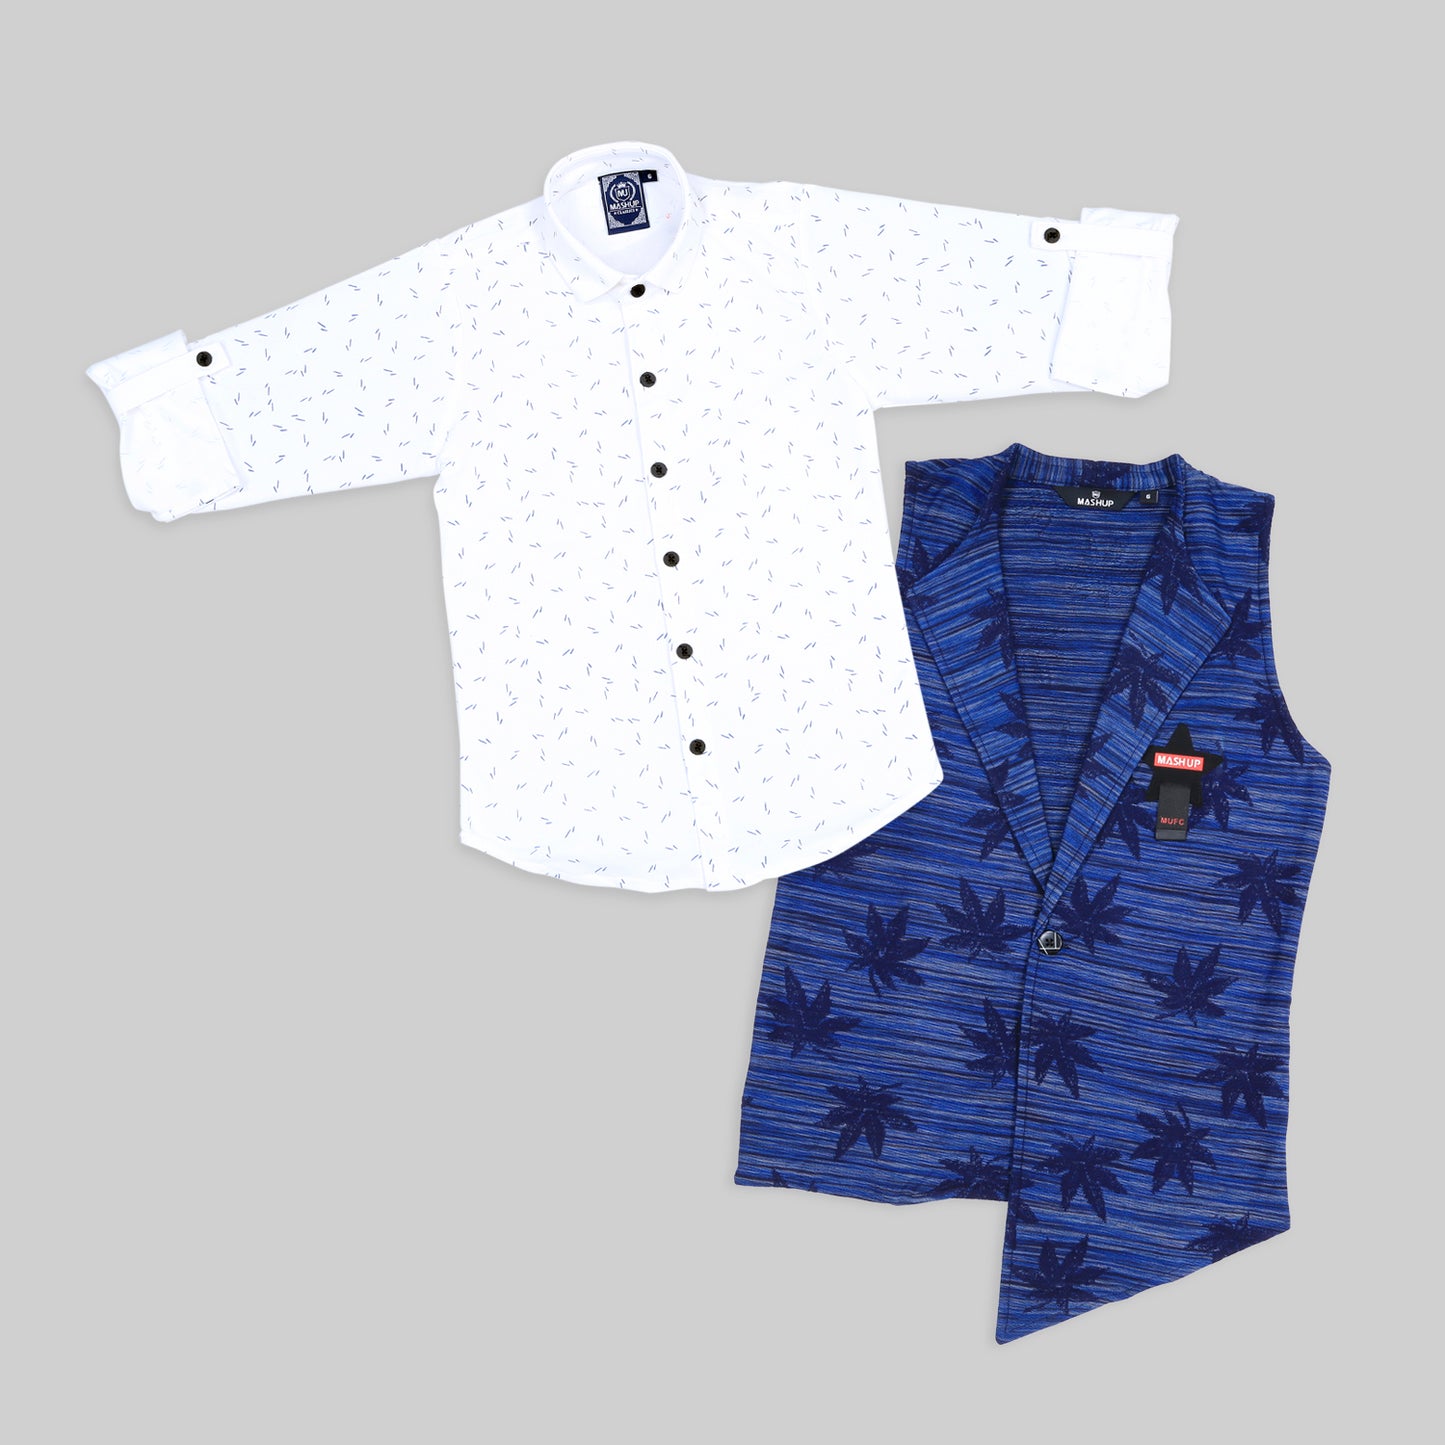 MashUp Fashionable cotton knit shrug/waistcoat and superior cotton shirt